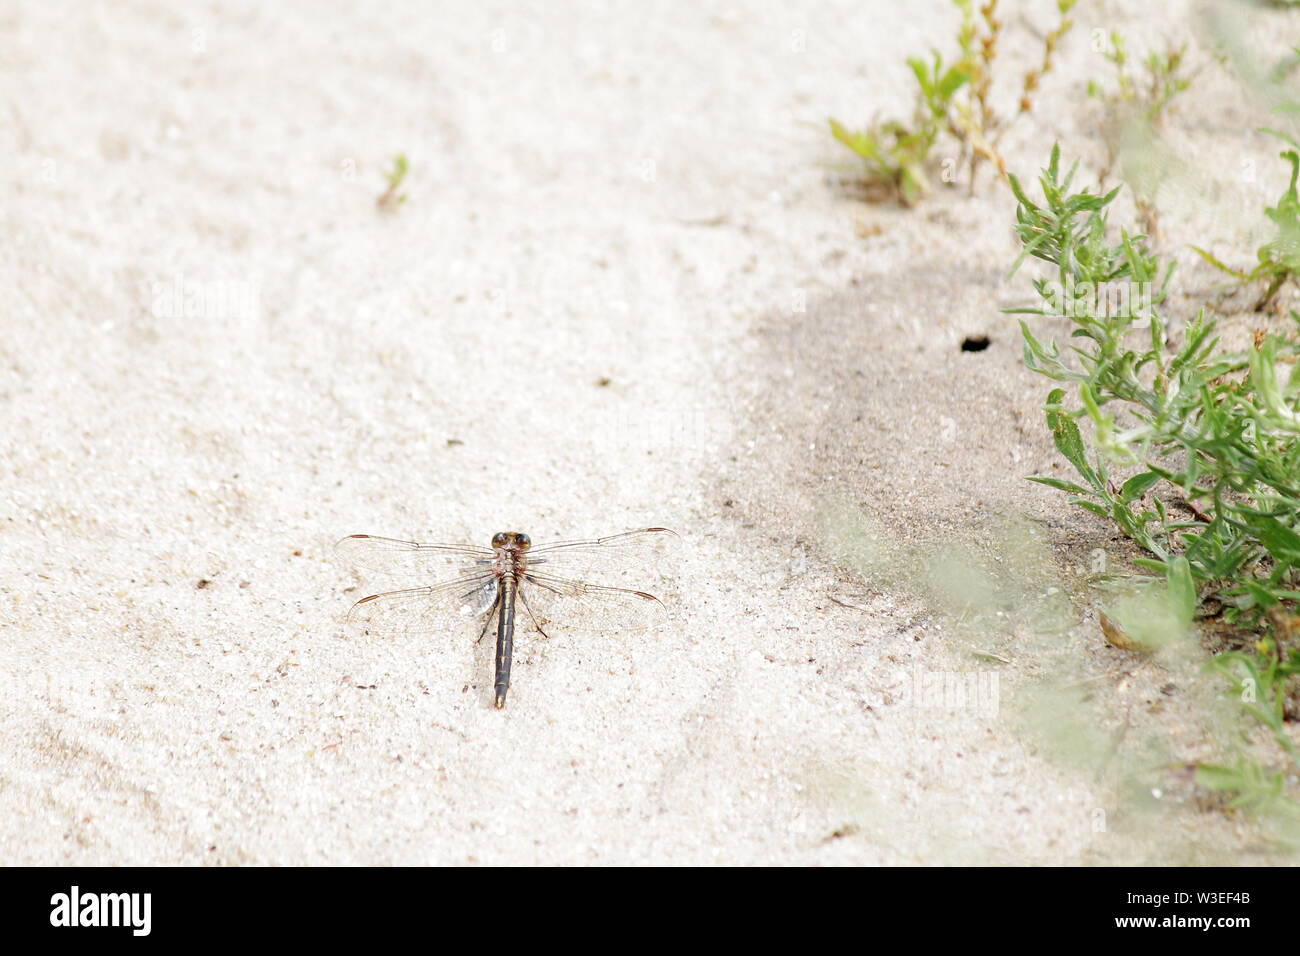 Brown libellule posée sur du sable de couleur claire Banque D'Images